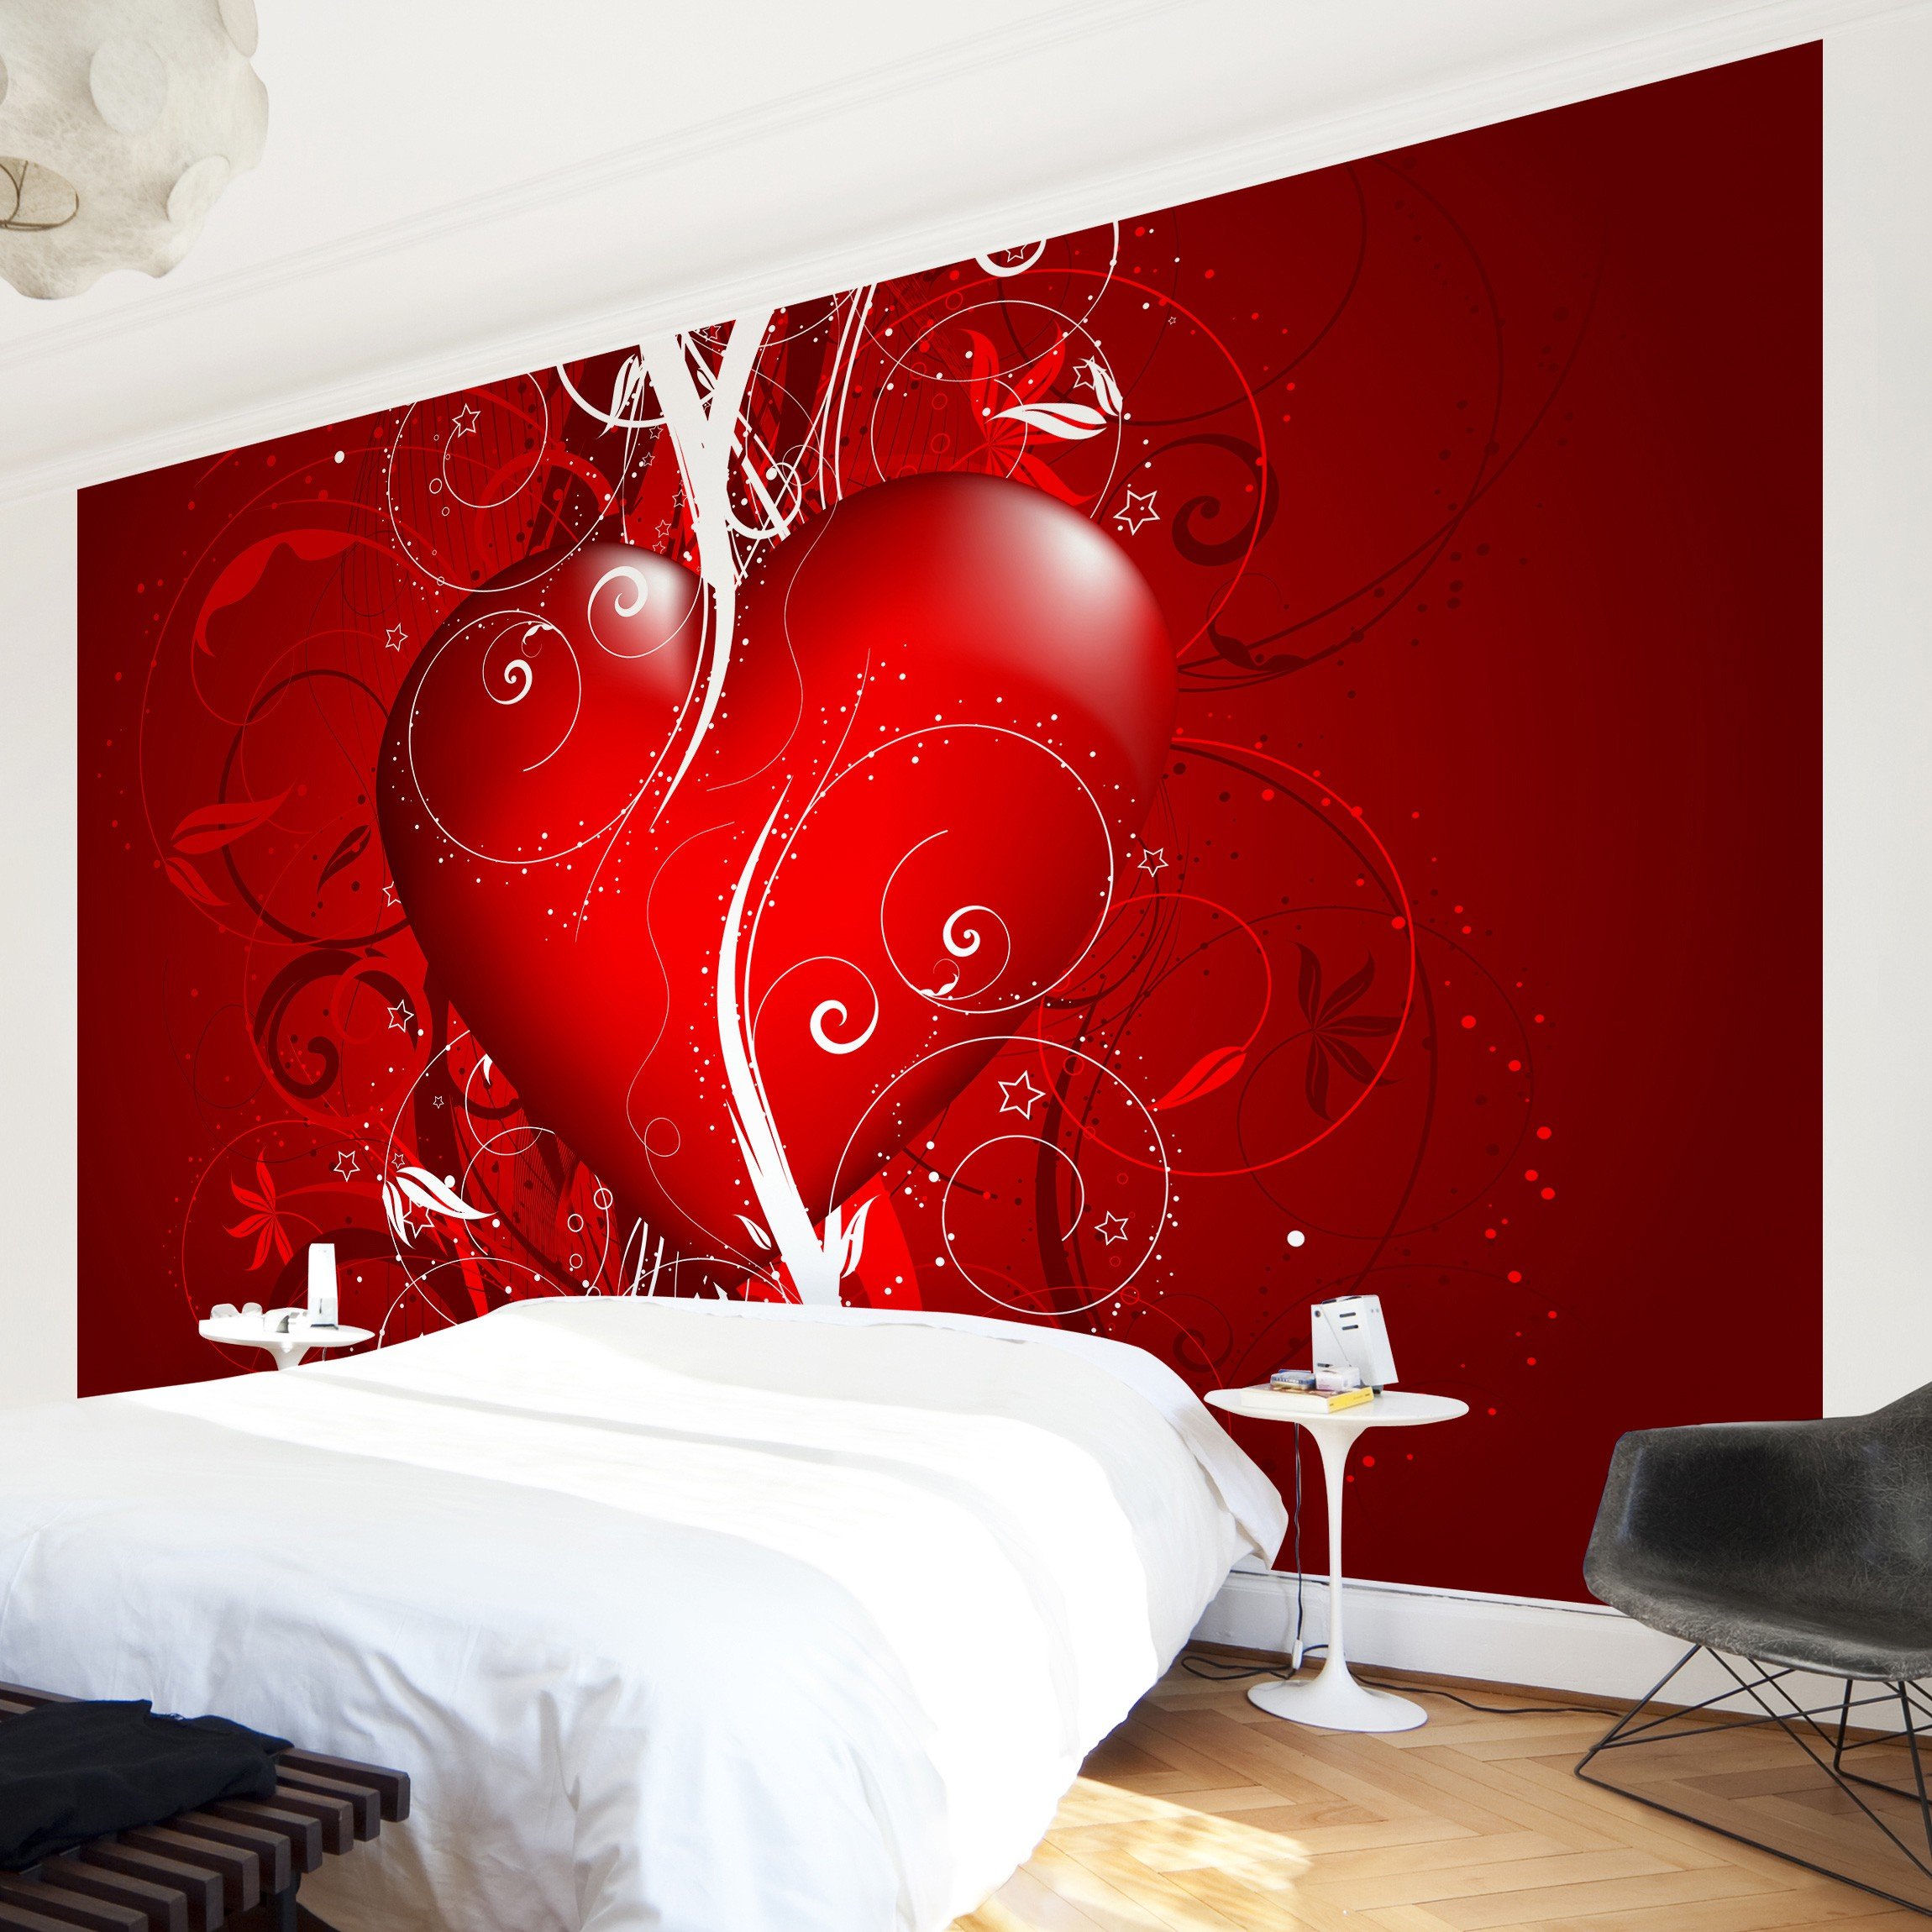 Apalis Vliestapete Floral Heart Fototapete Breit | Vlies Tapete Wandtapete Wandbild Foto 3D Fototapete für Schlafzimmer Wohnzimmer Küche | rot, 108070